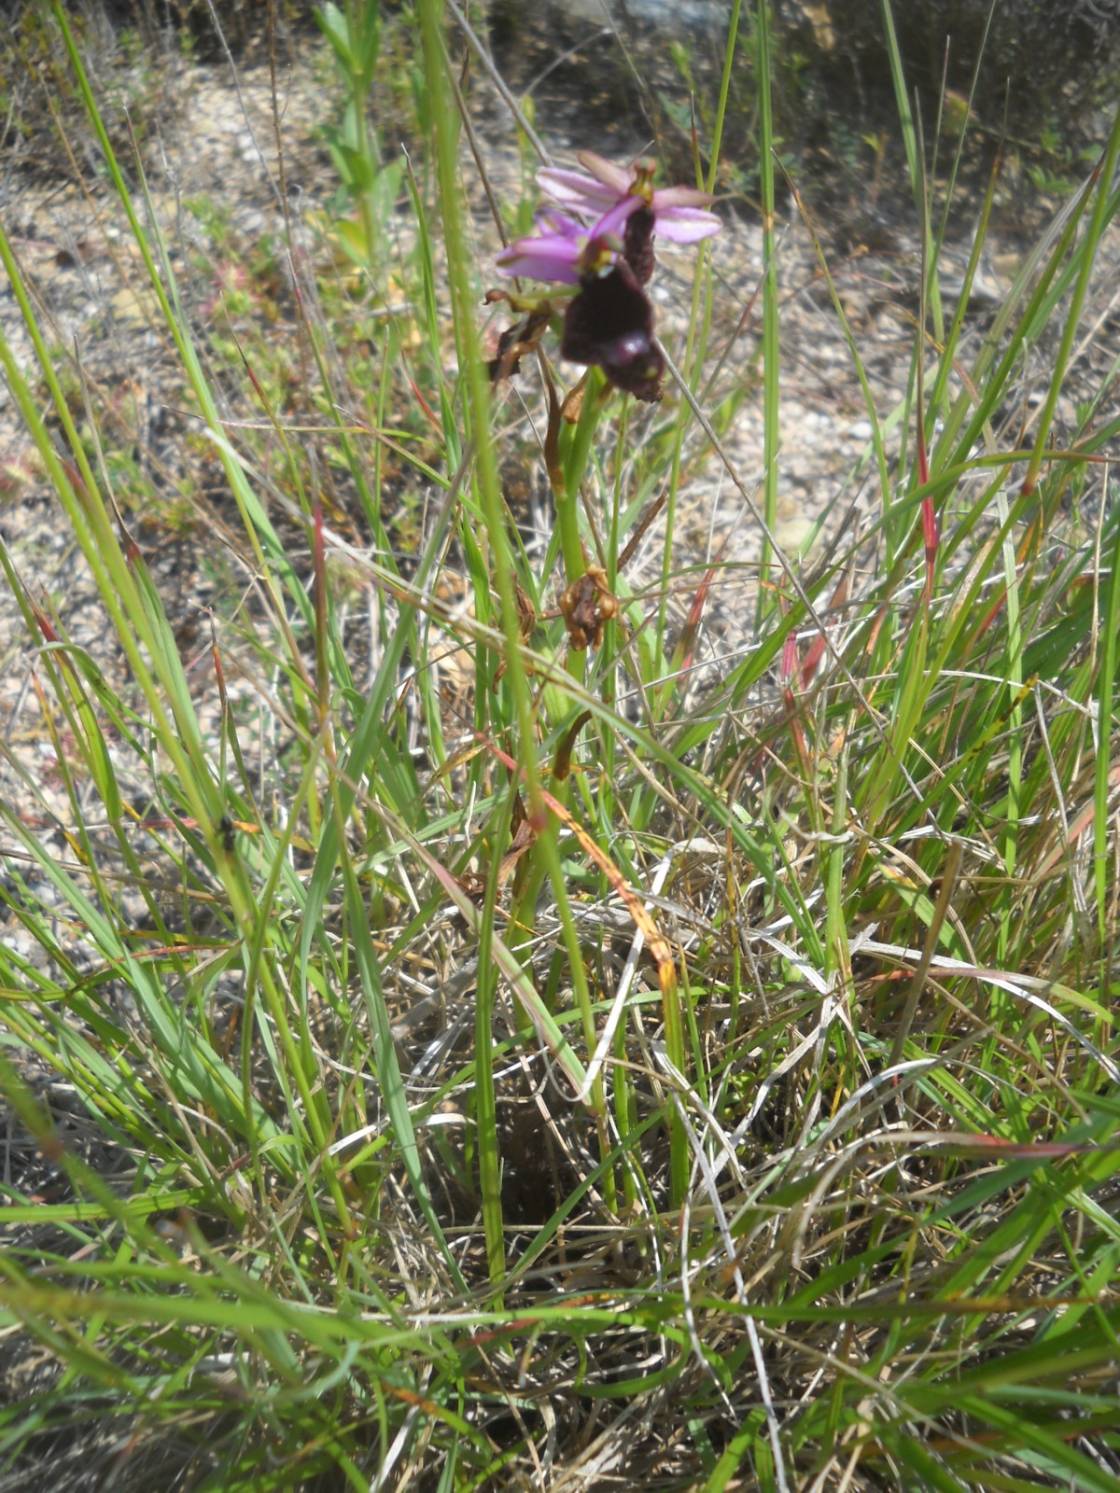 Bertolonis Ragwurz (Ophrys bertolonii)